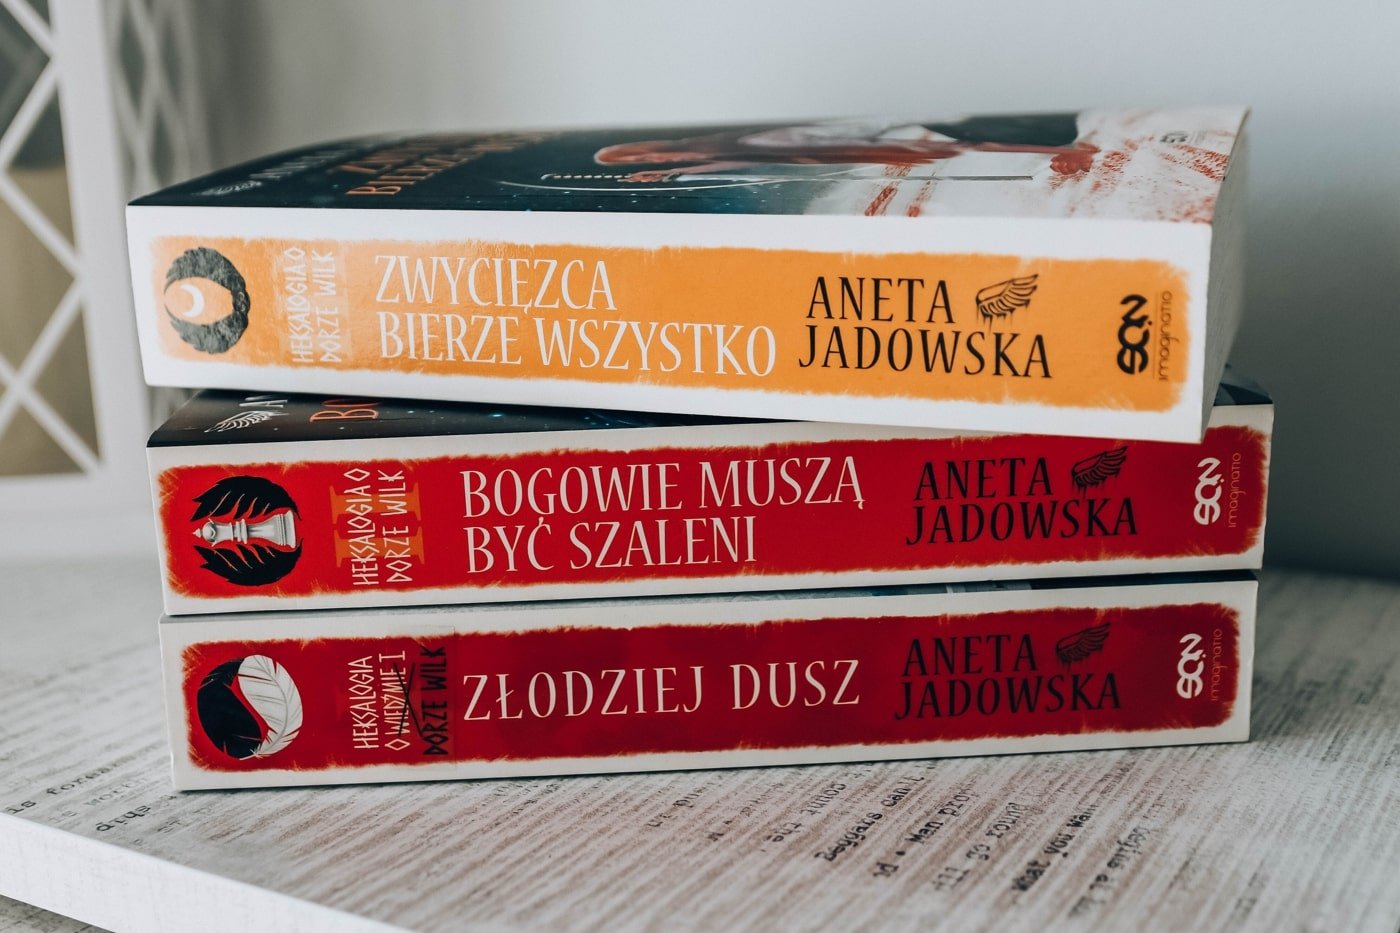 3 tomy heksalogii o Dorze wilk - Aneta Jadowska